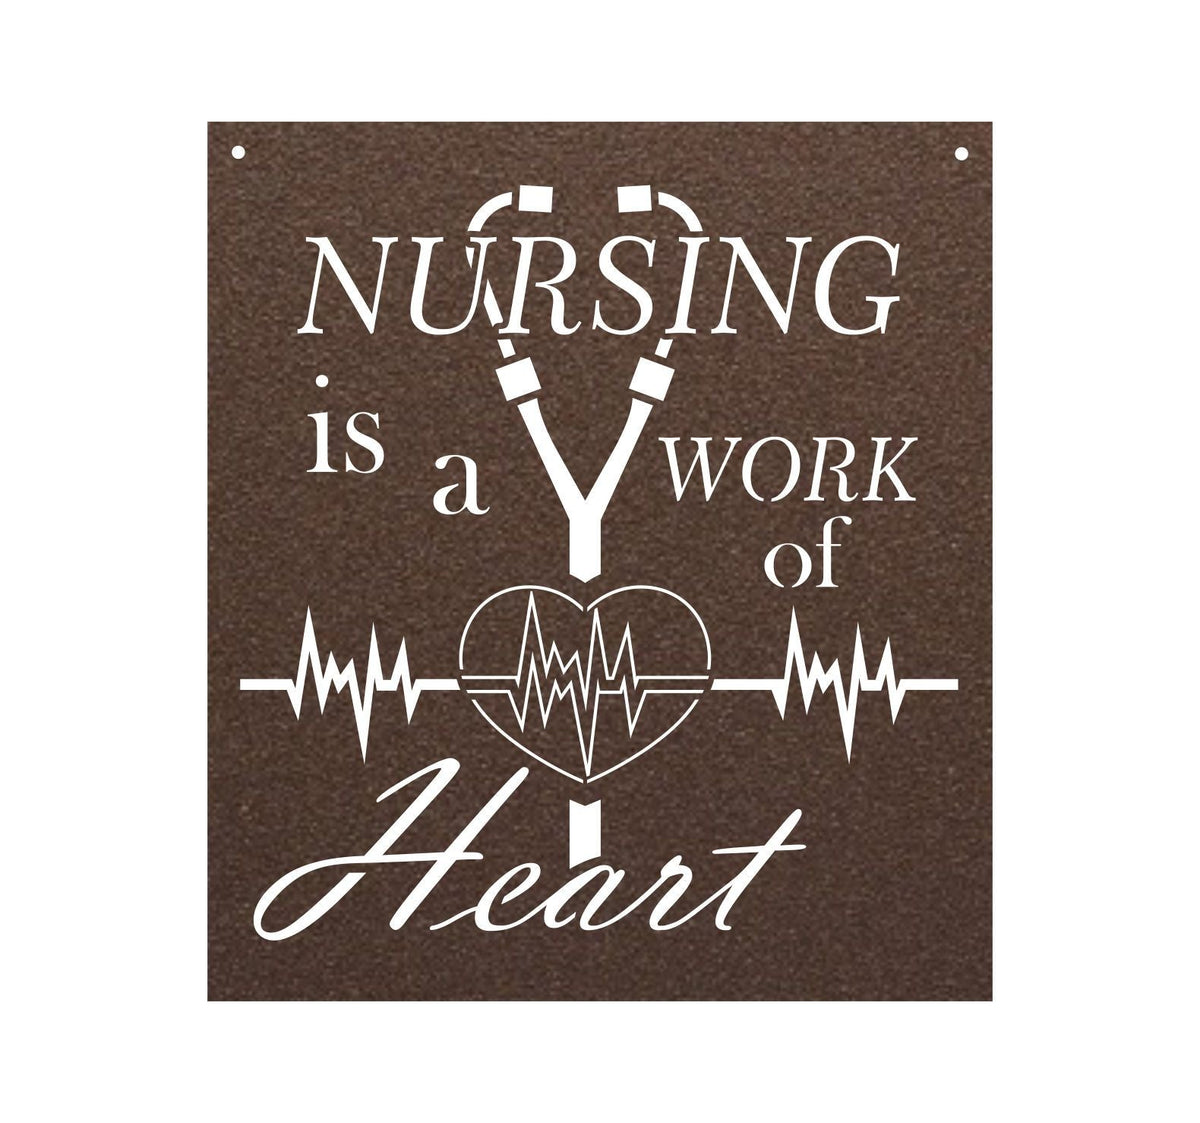 Work of Heart Nurse Sign Wall Art